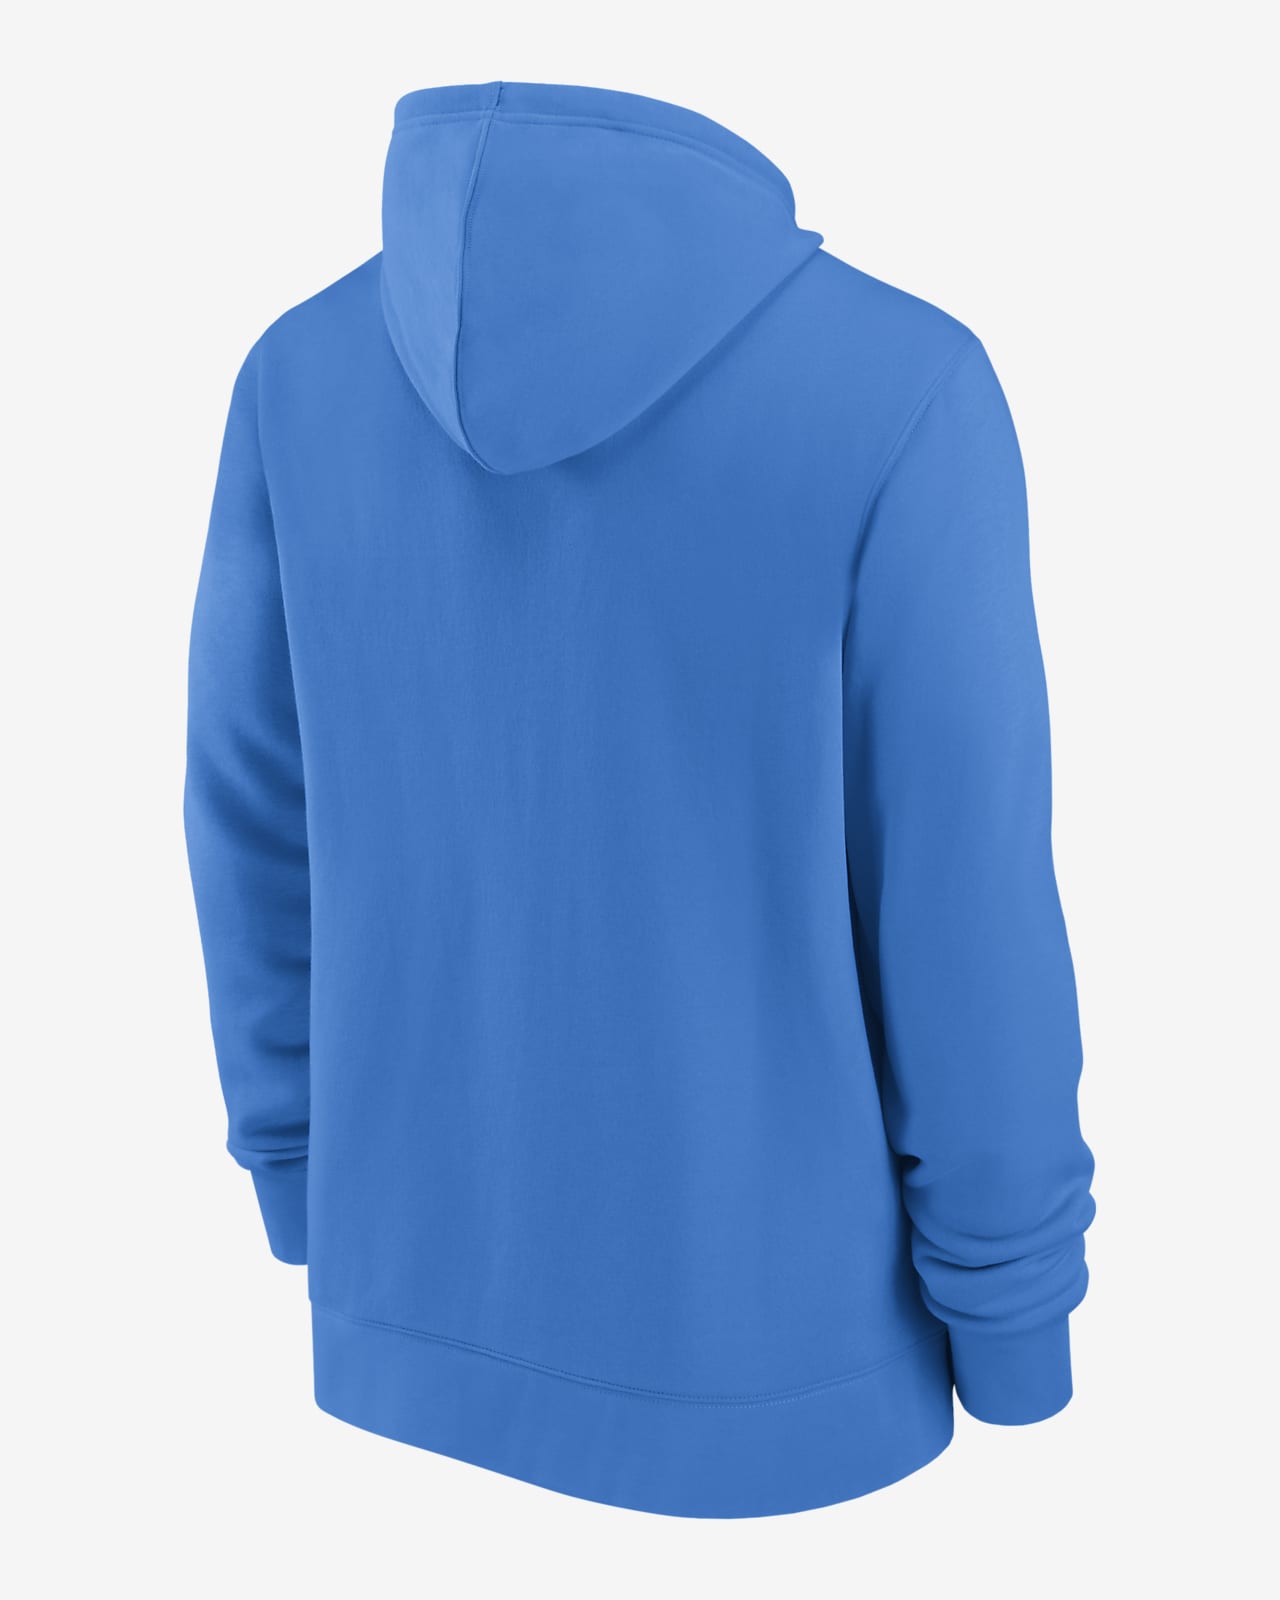 Nike / Men's Los Angeles Dodgers Blue V-Neck Pullover Jacket